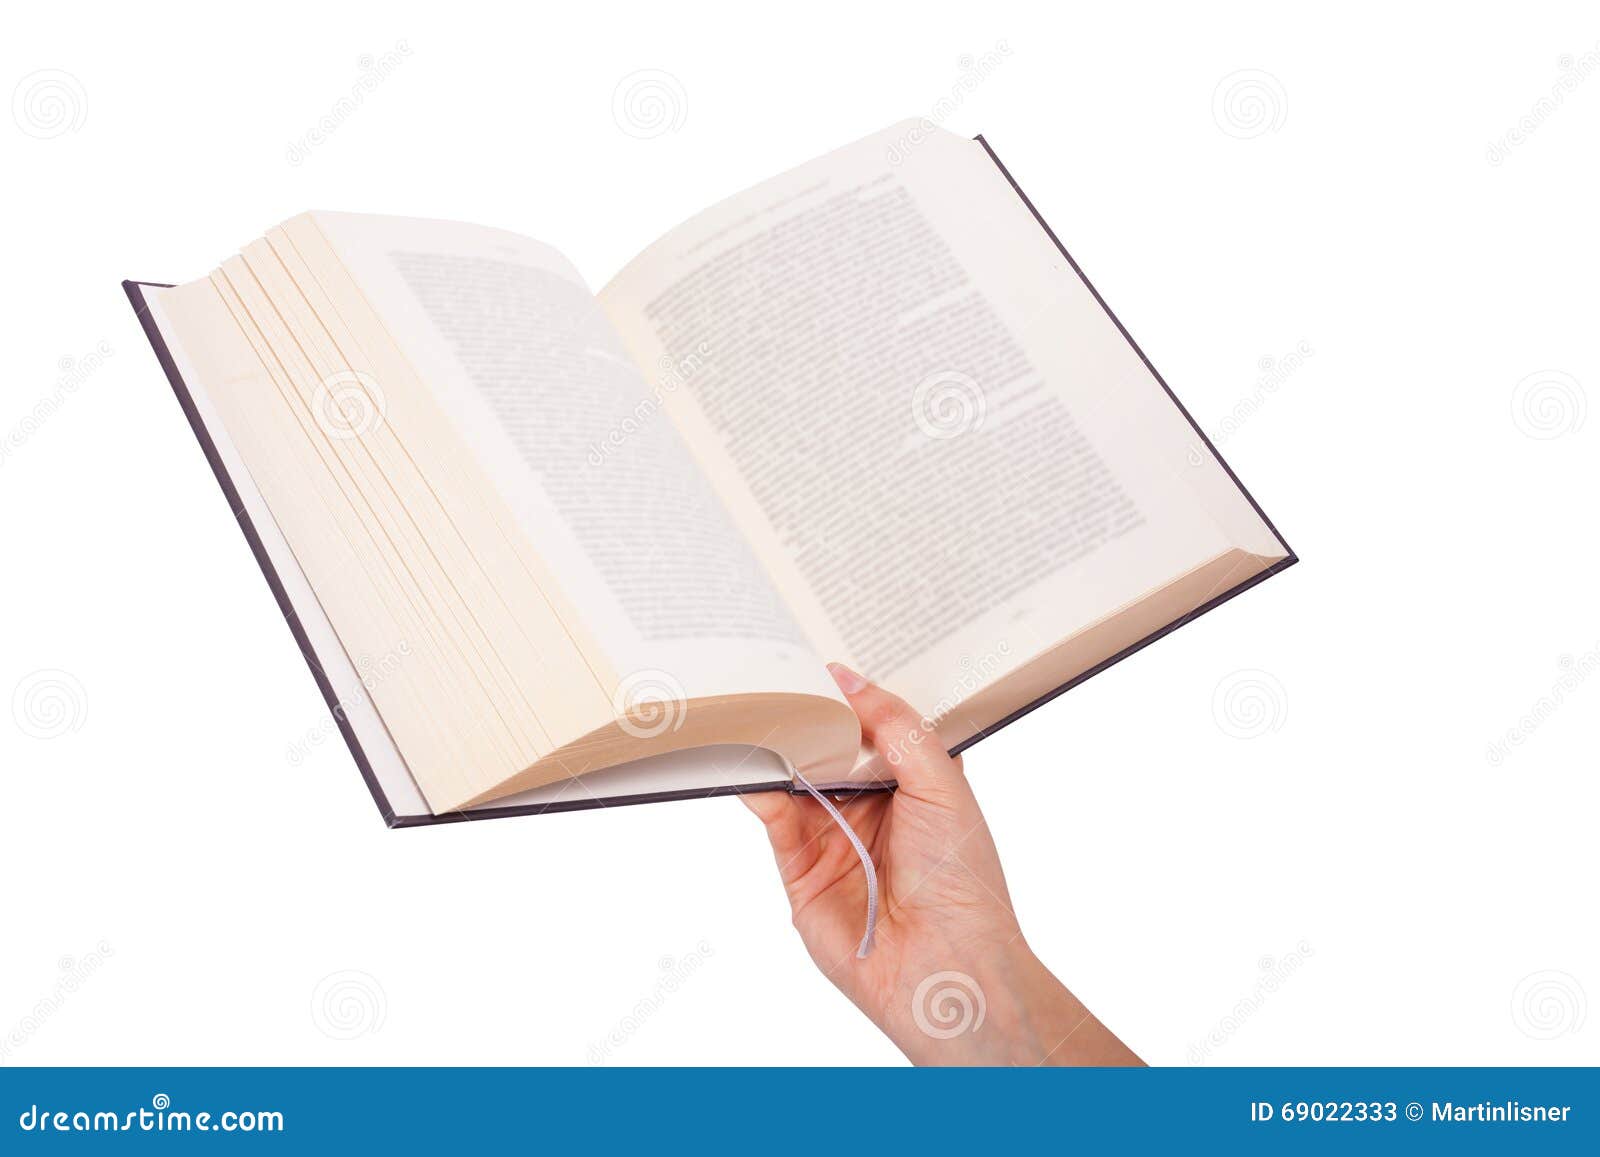 Раскрытая книга в руках. Книжка в руках. Держит книгу. Рука с открытой книгой. Рука держит книгу.